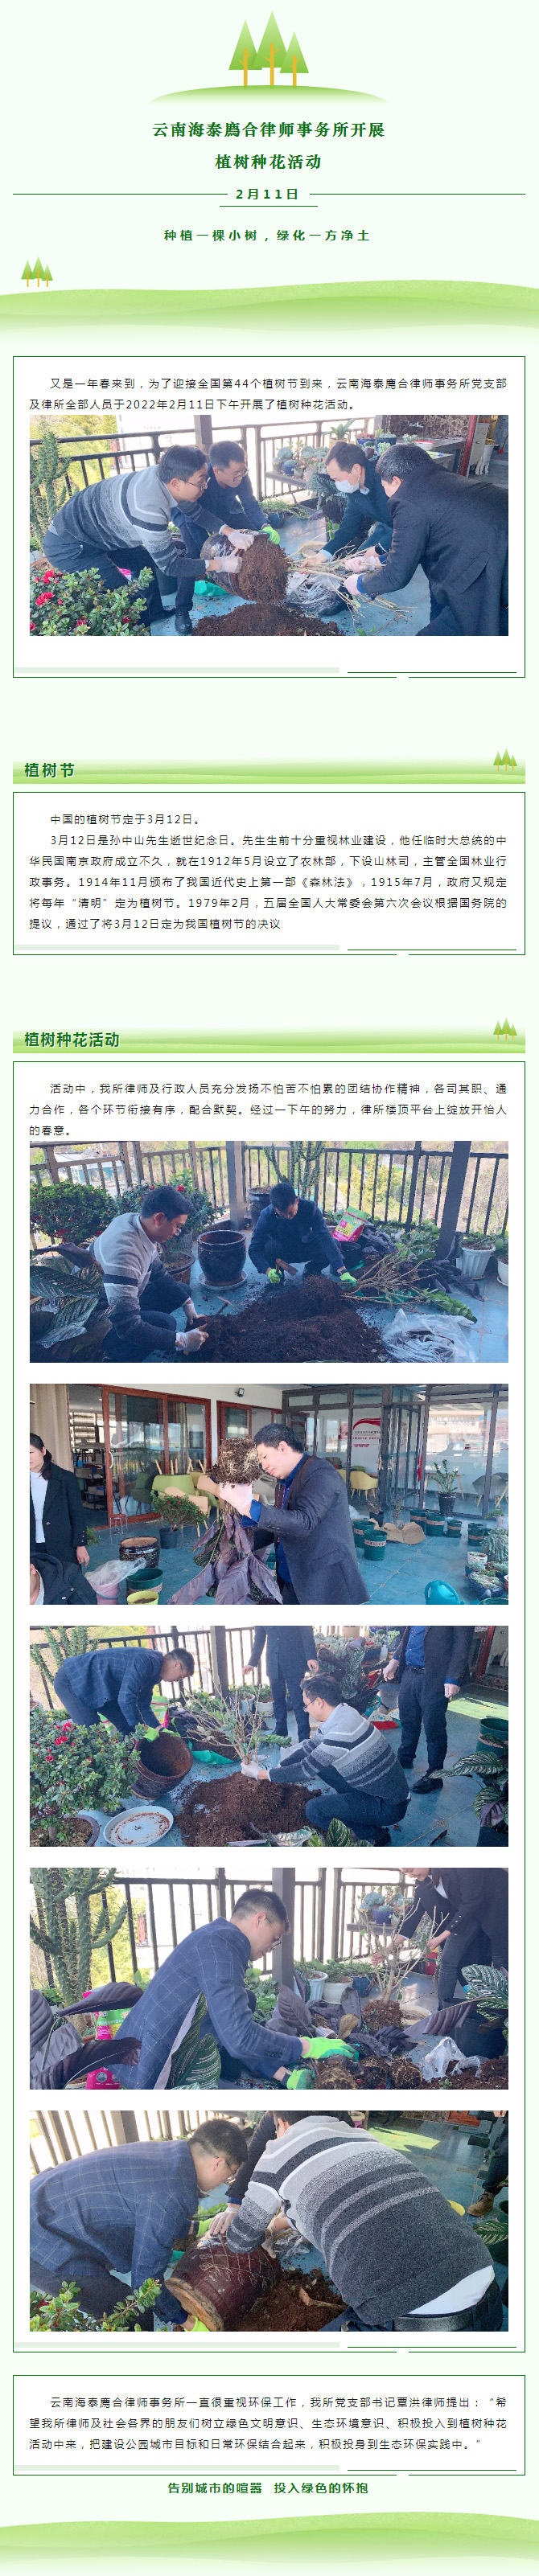 云南海泰廌合律师事务所开展植树种花活动